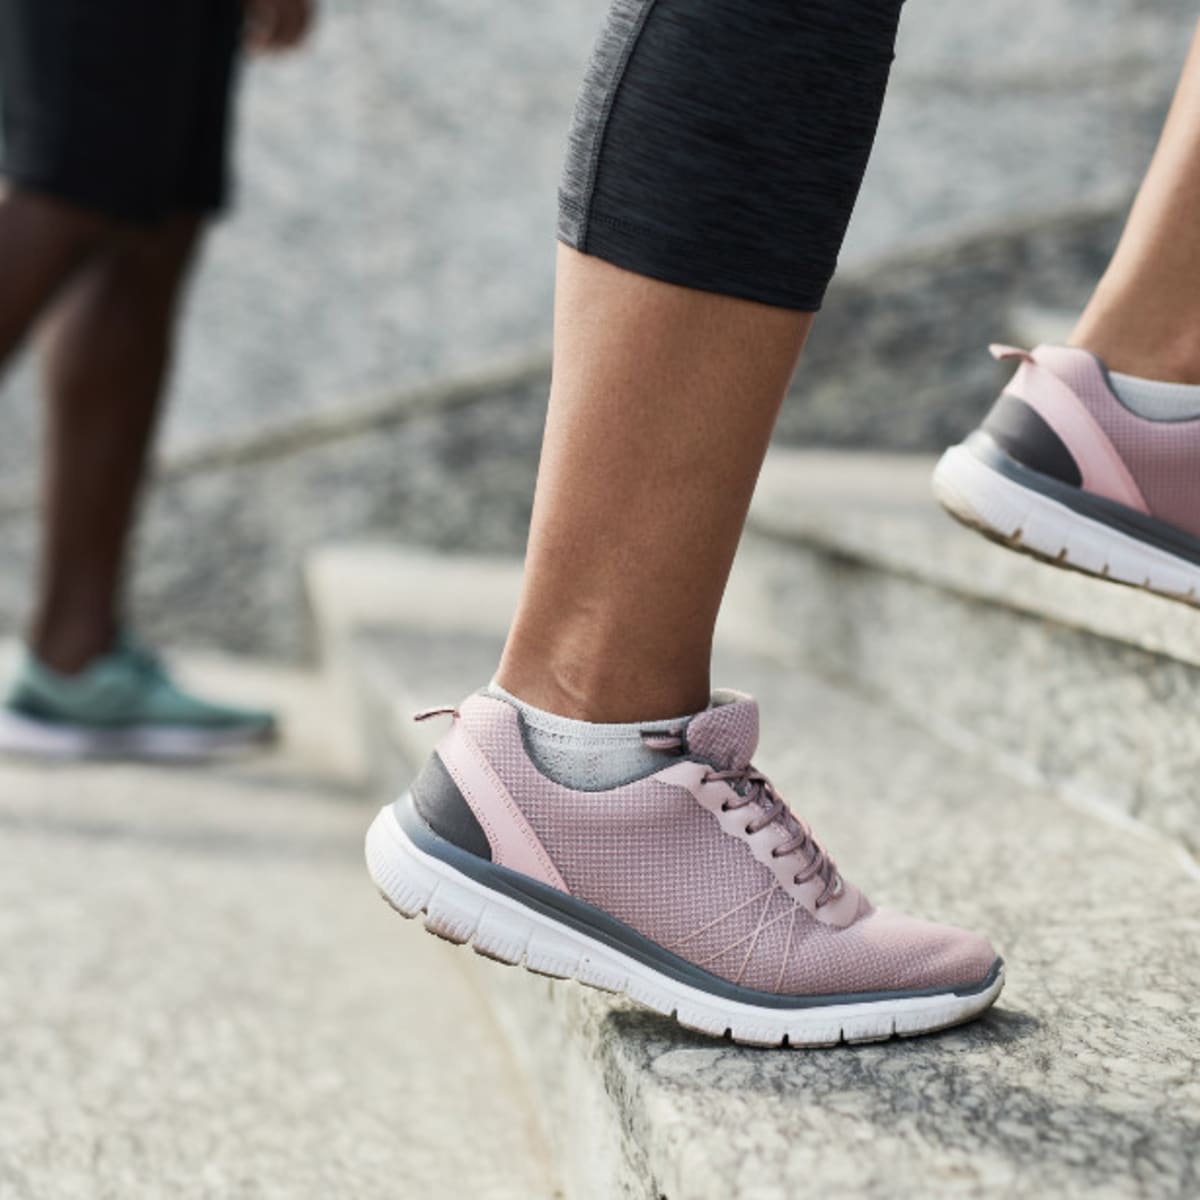 14 Best Comfort Shoe Brands for Foot Pain & Heel Pain 2024